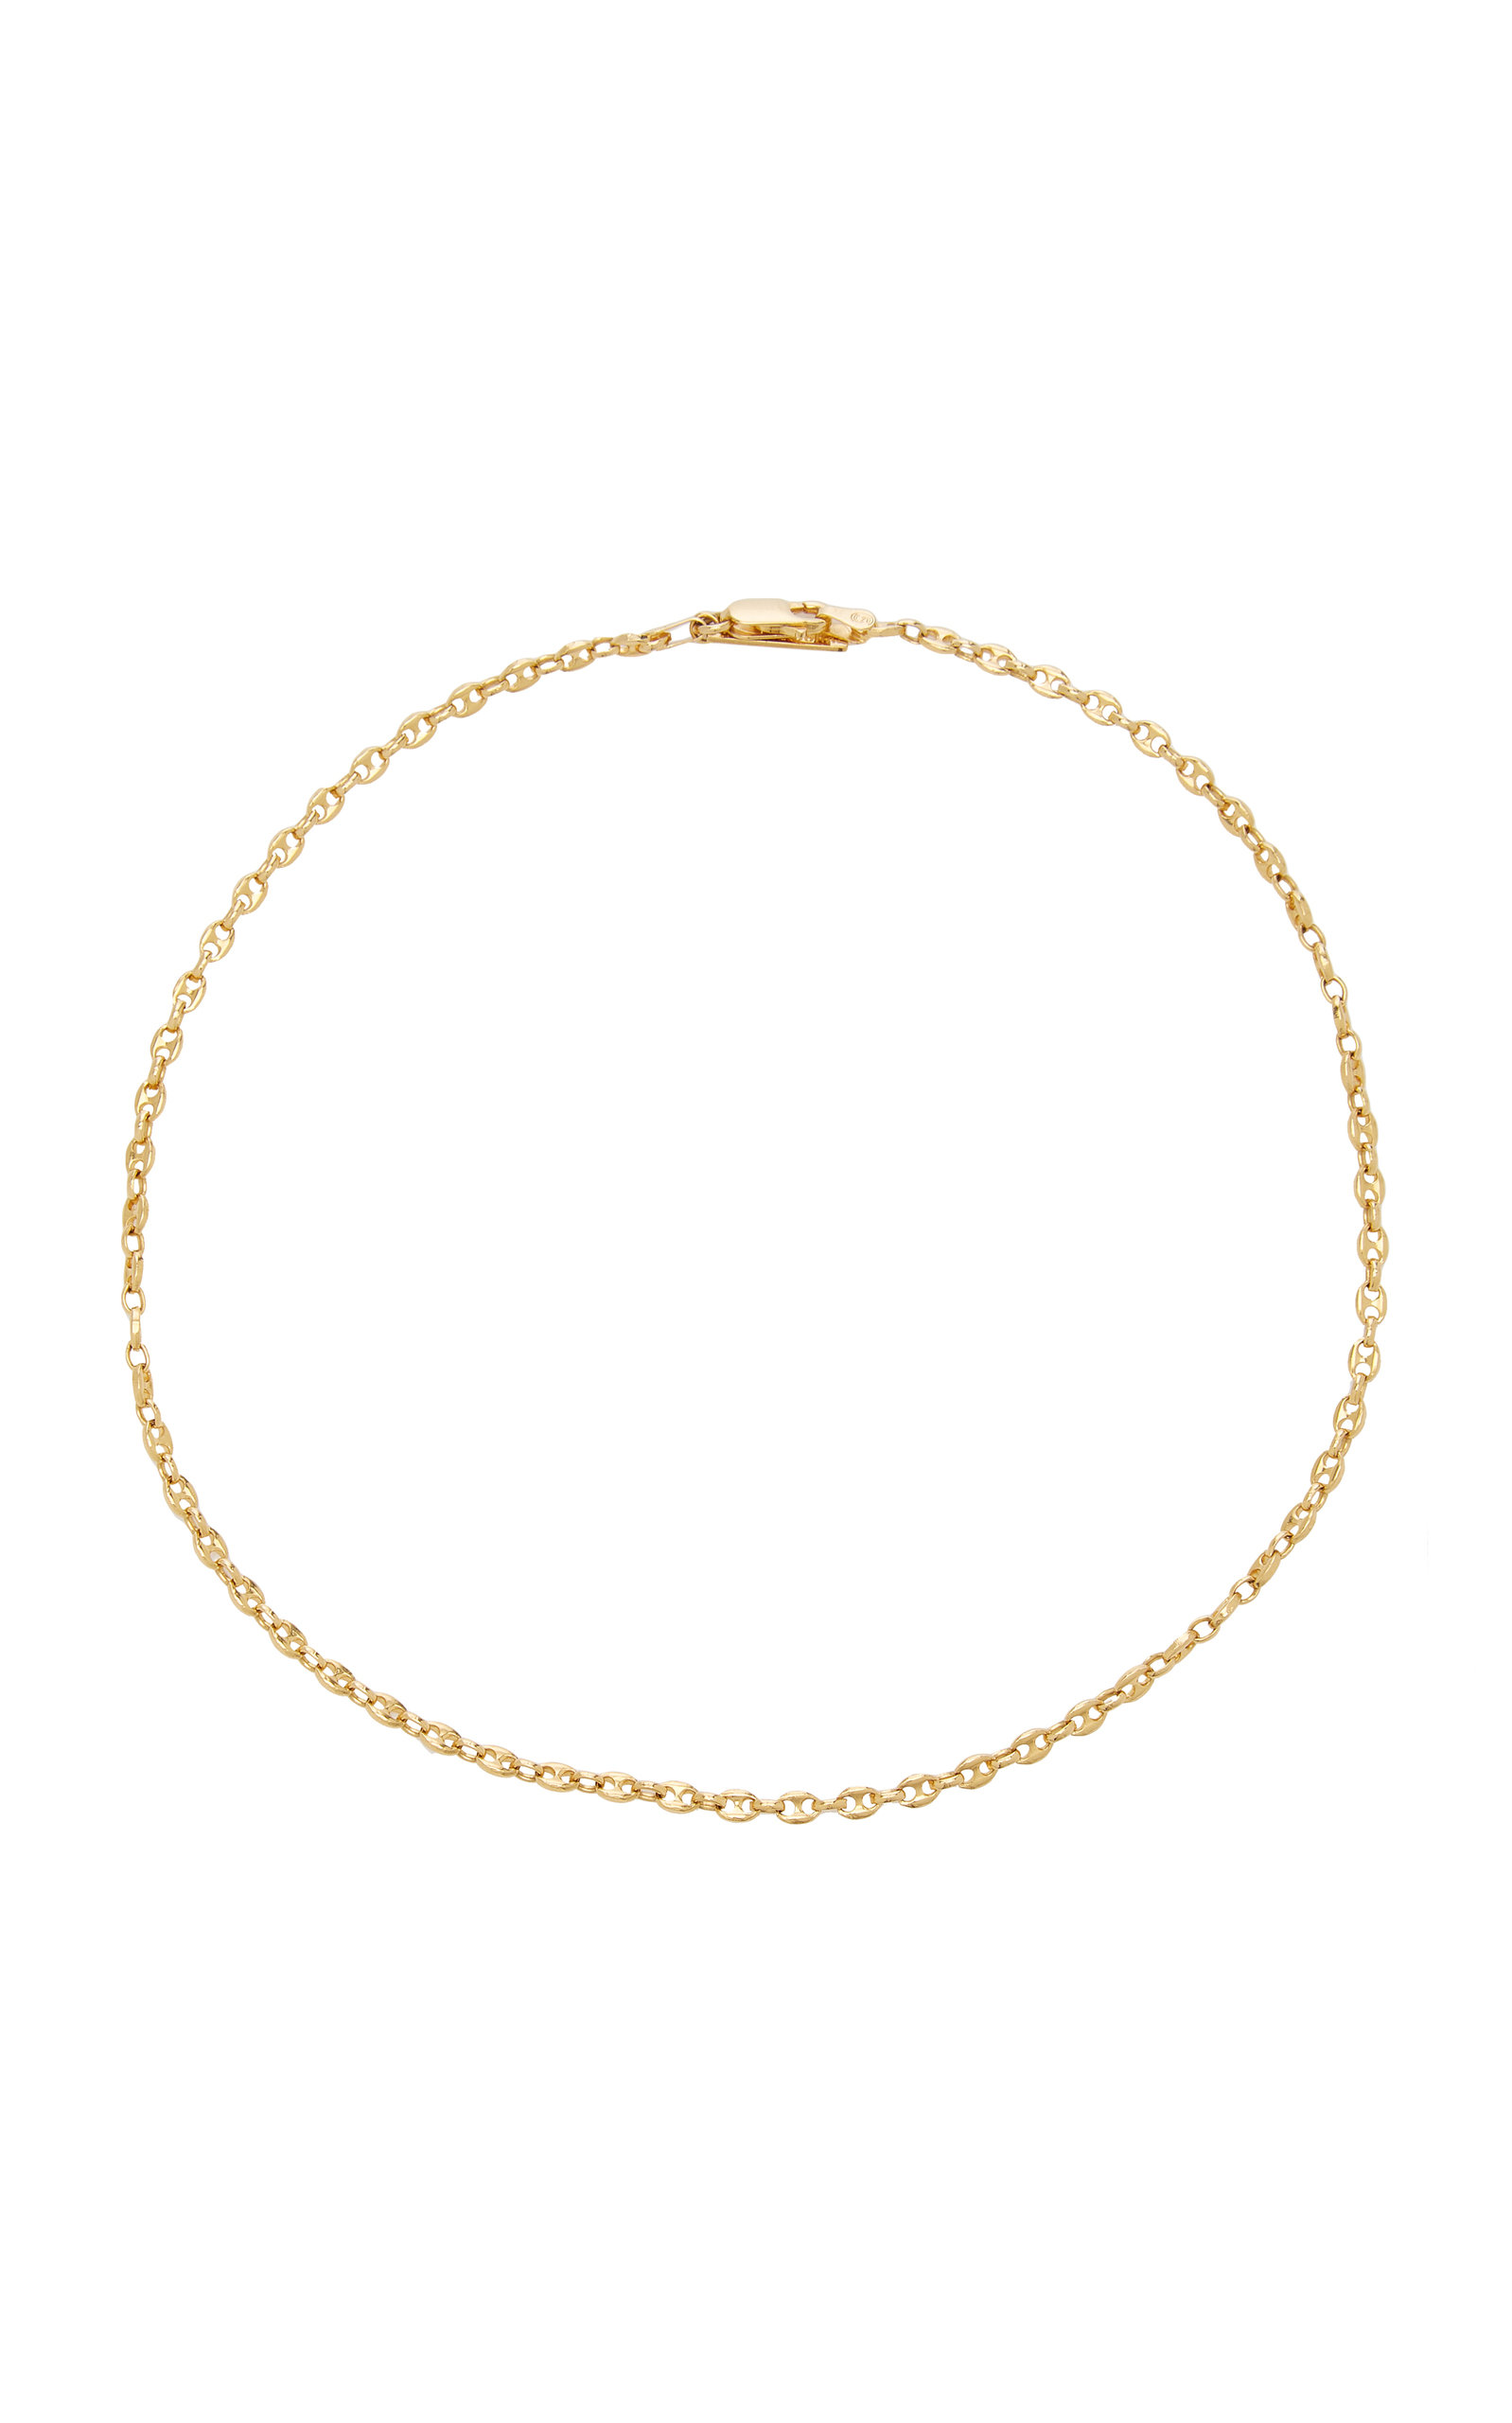 Sophie Buhai Women's Classic Delicate 18K Gold Vermeil Chain Necklace